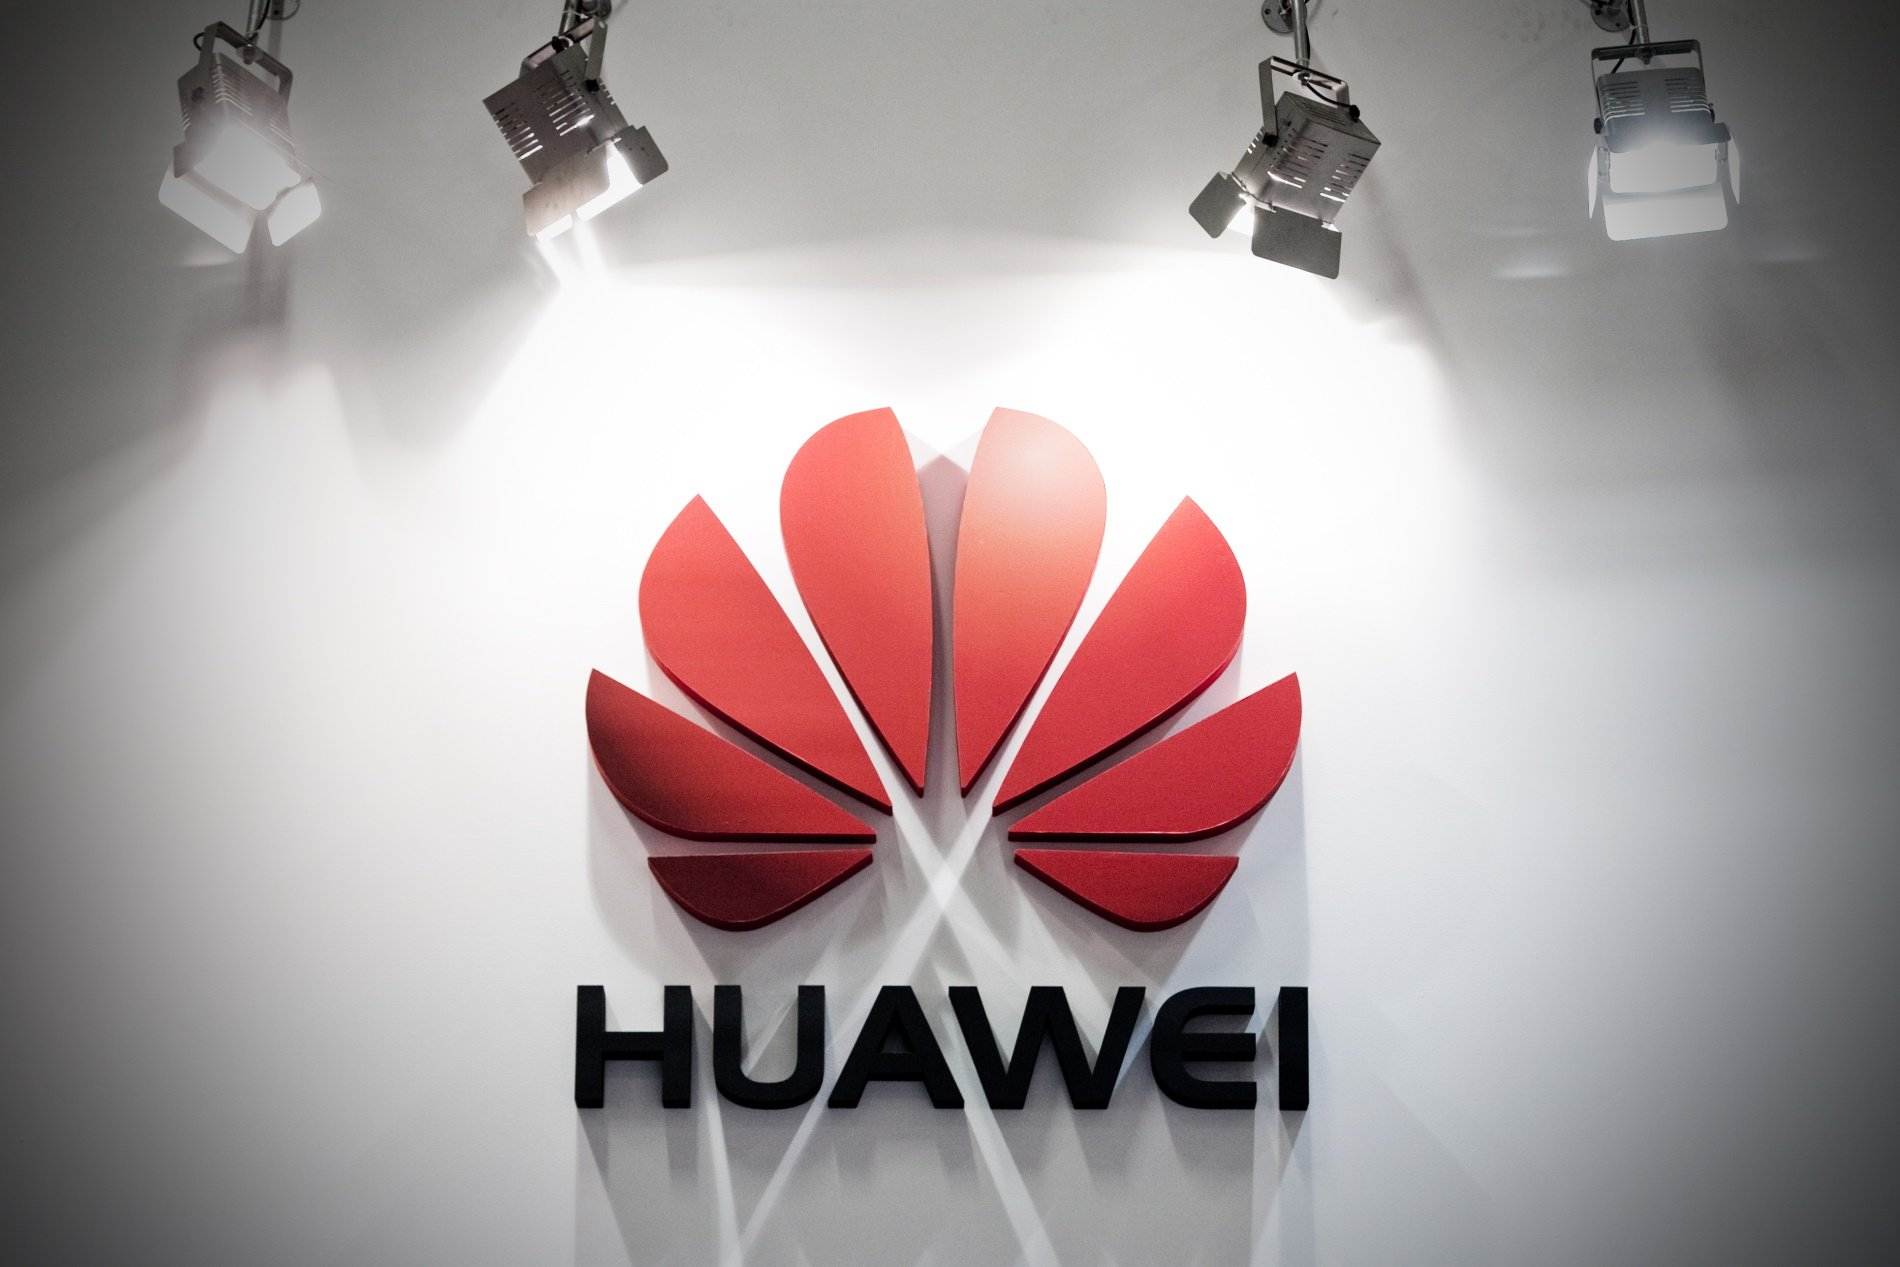 Huawei encapçala la llista d'empreses sol·licitadores de patents europees